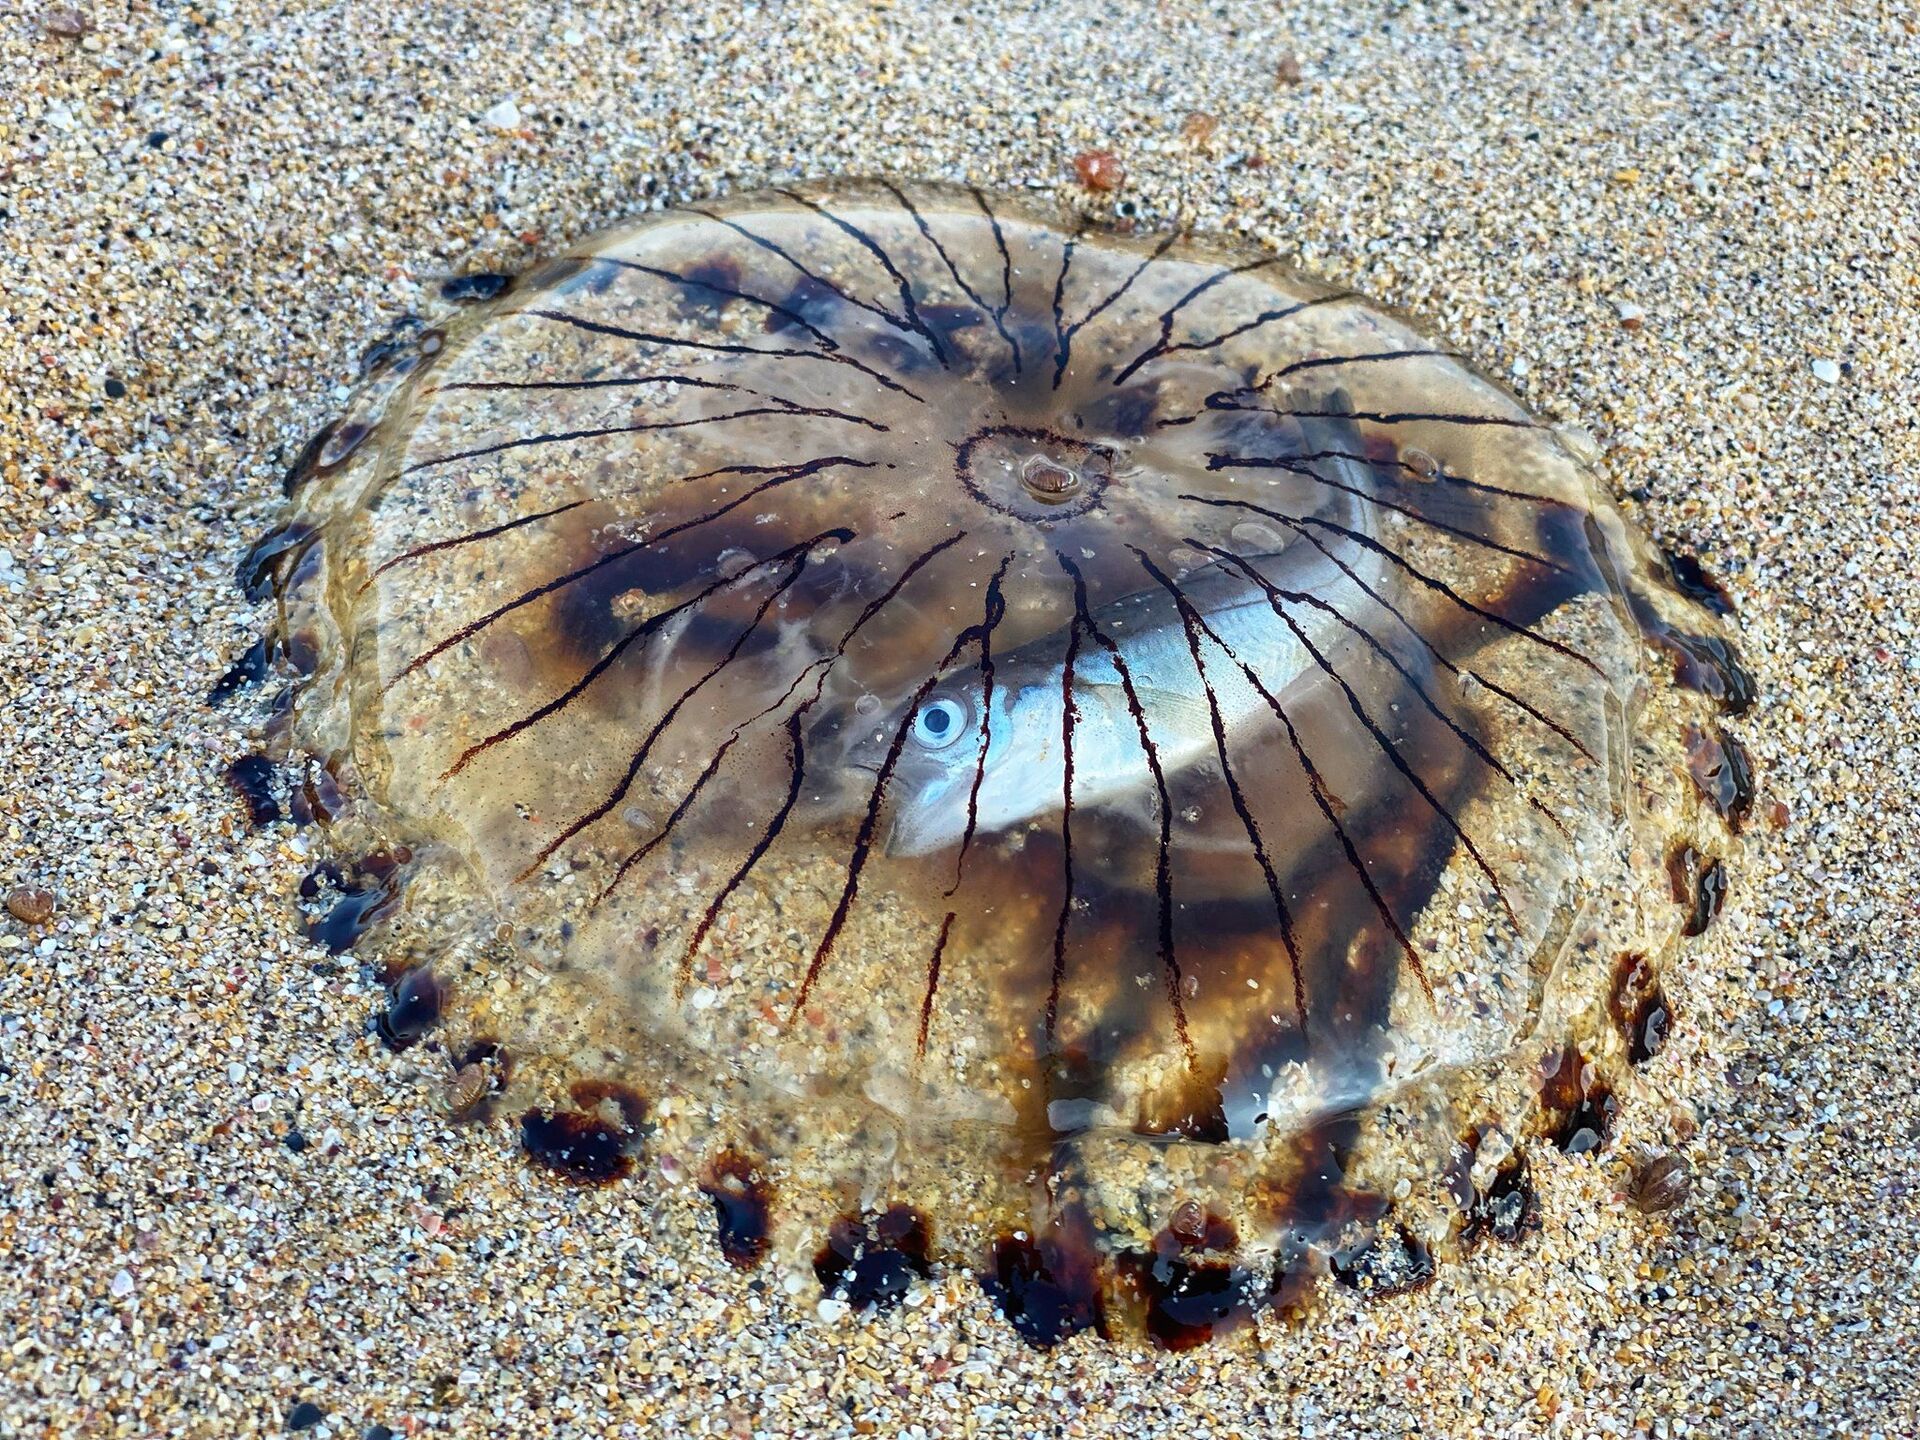 Peixe intacto é encontrado dentro de medusa morta no Reino Unido (FOTO) - Sputnik Brasil, 1920, 13.08.2021